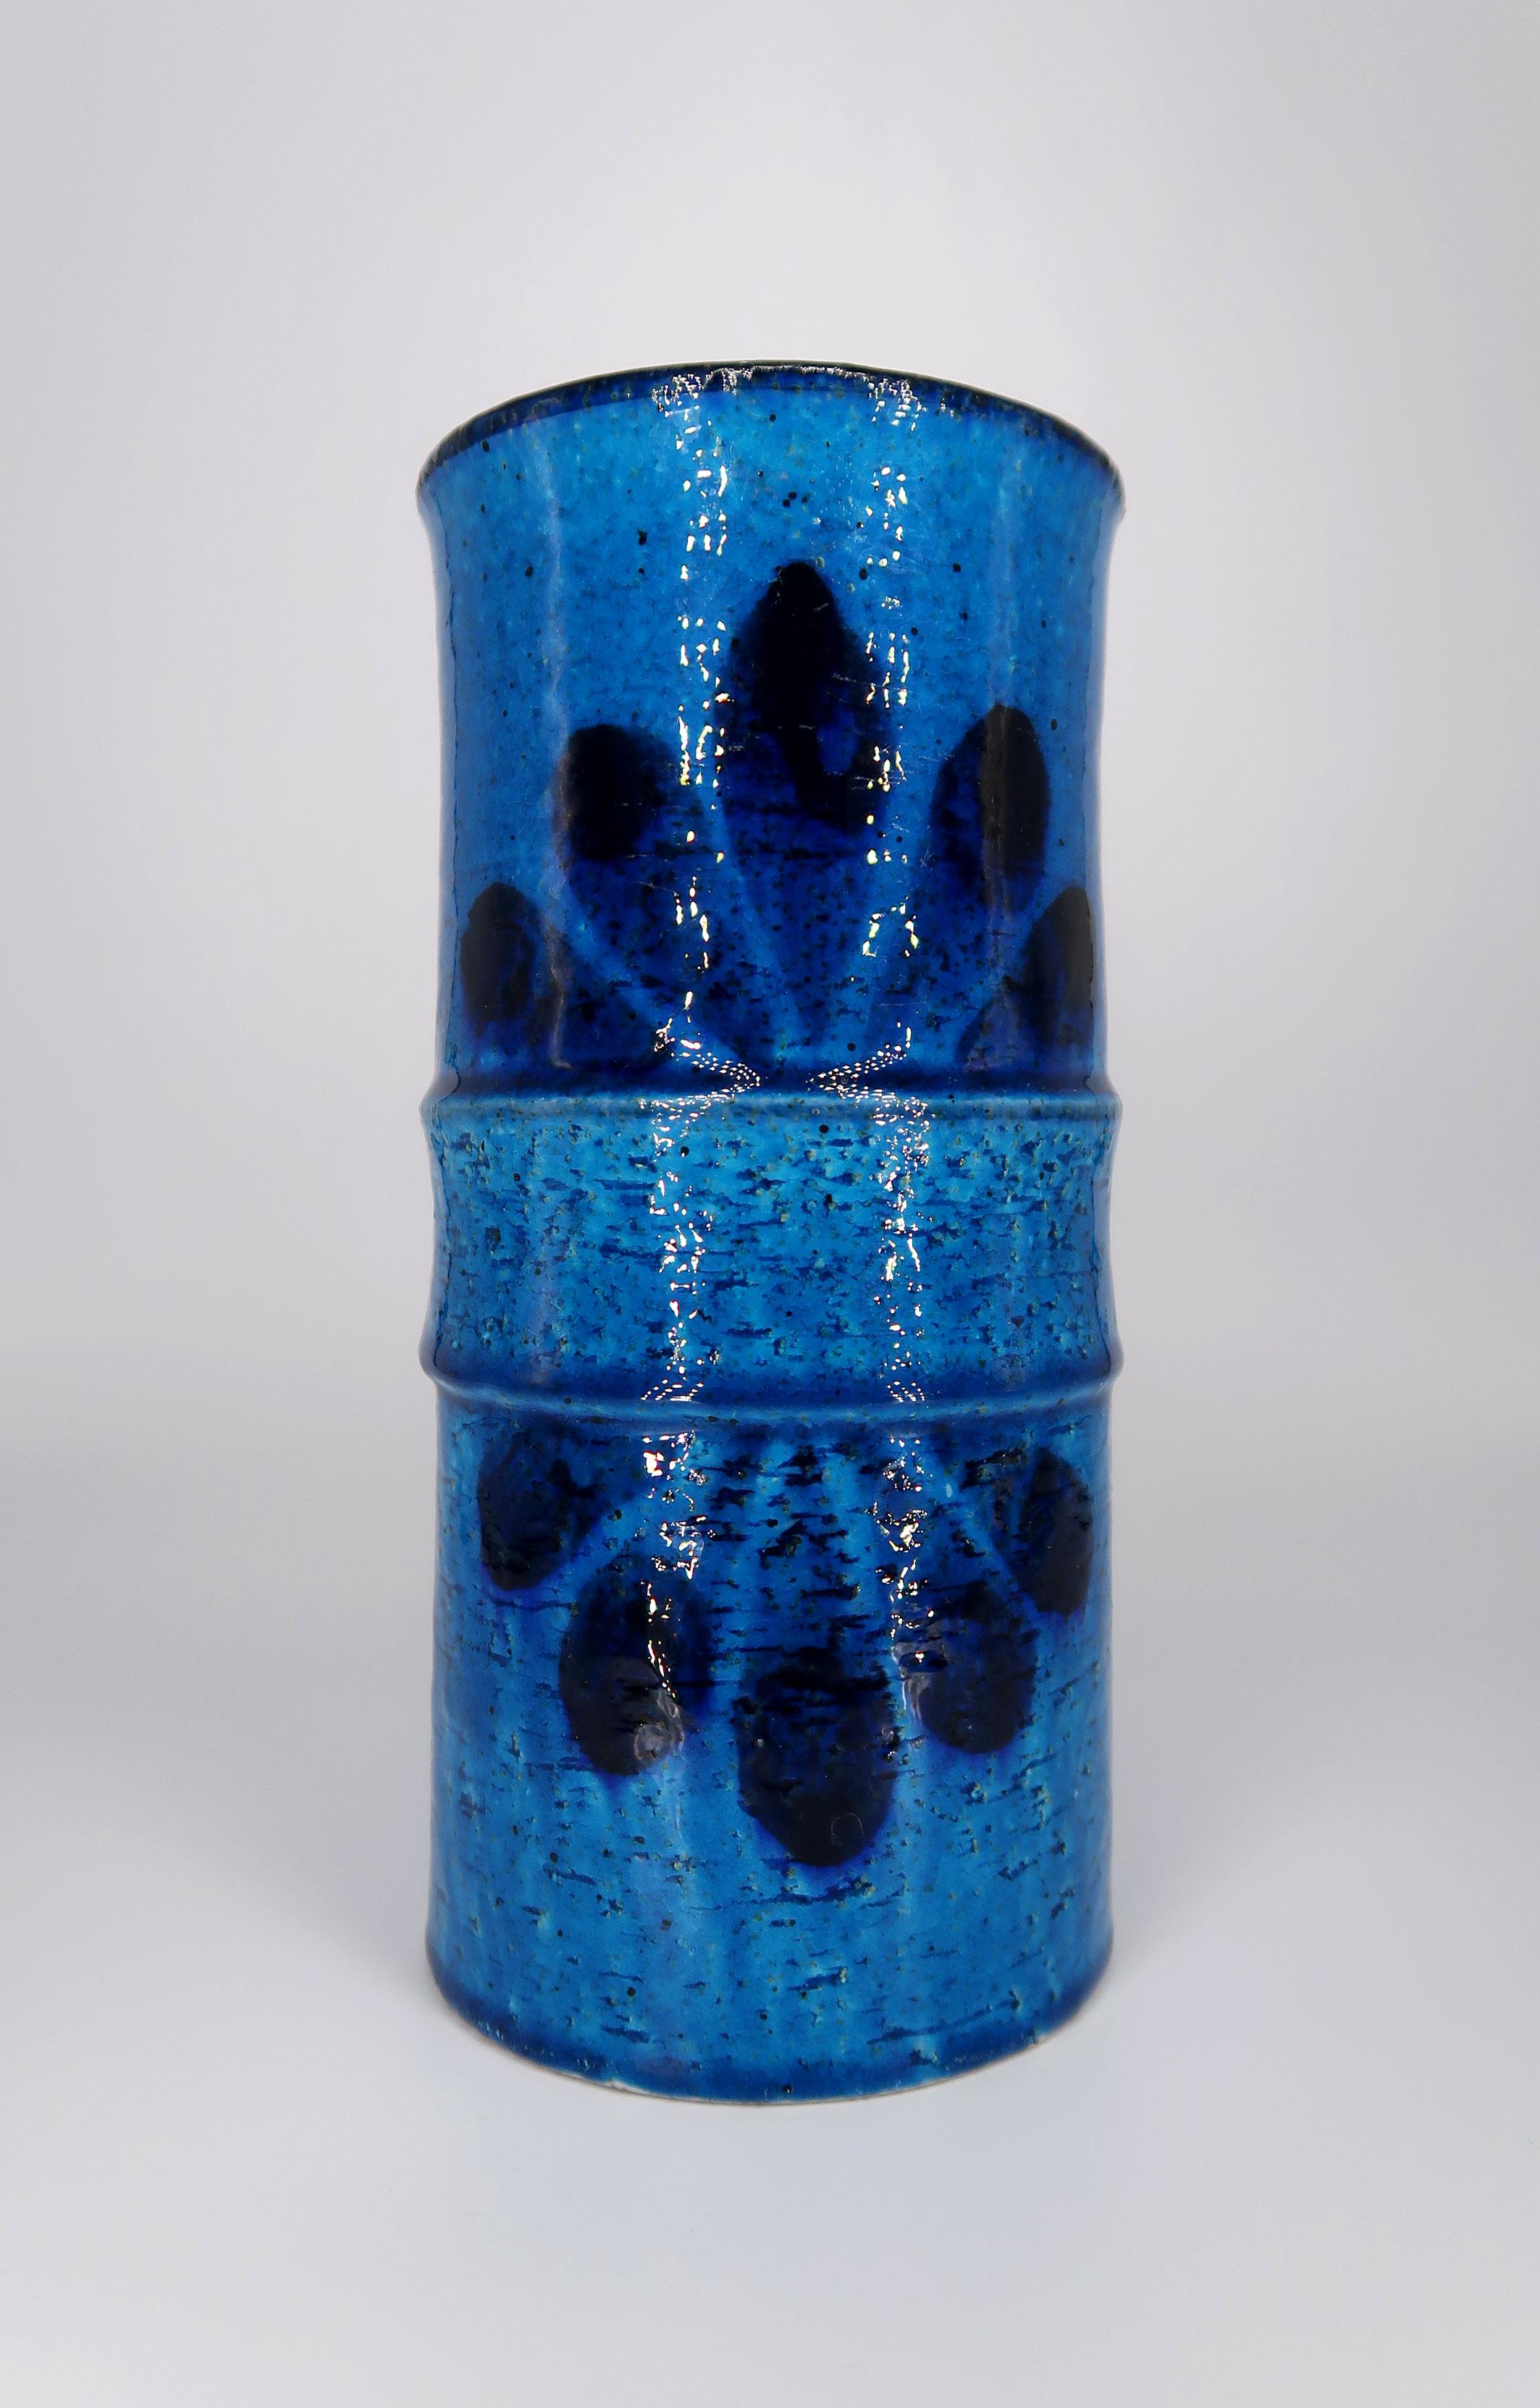 Étonnant vase en céramique chamottée du milieu du siècle, fait et décoré à la main, réalisé par le groupe d'artistes céramistes suédois alors secret, Drejargruppen, pour Rörstrand en 1972. Vase de forme cylindrique bleu brillant entièrement émaillé